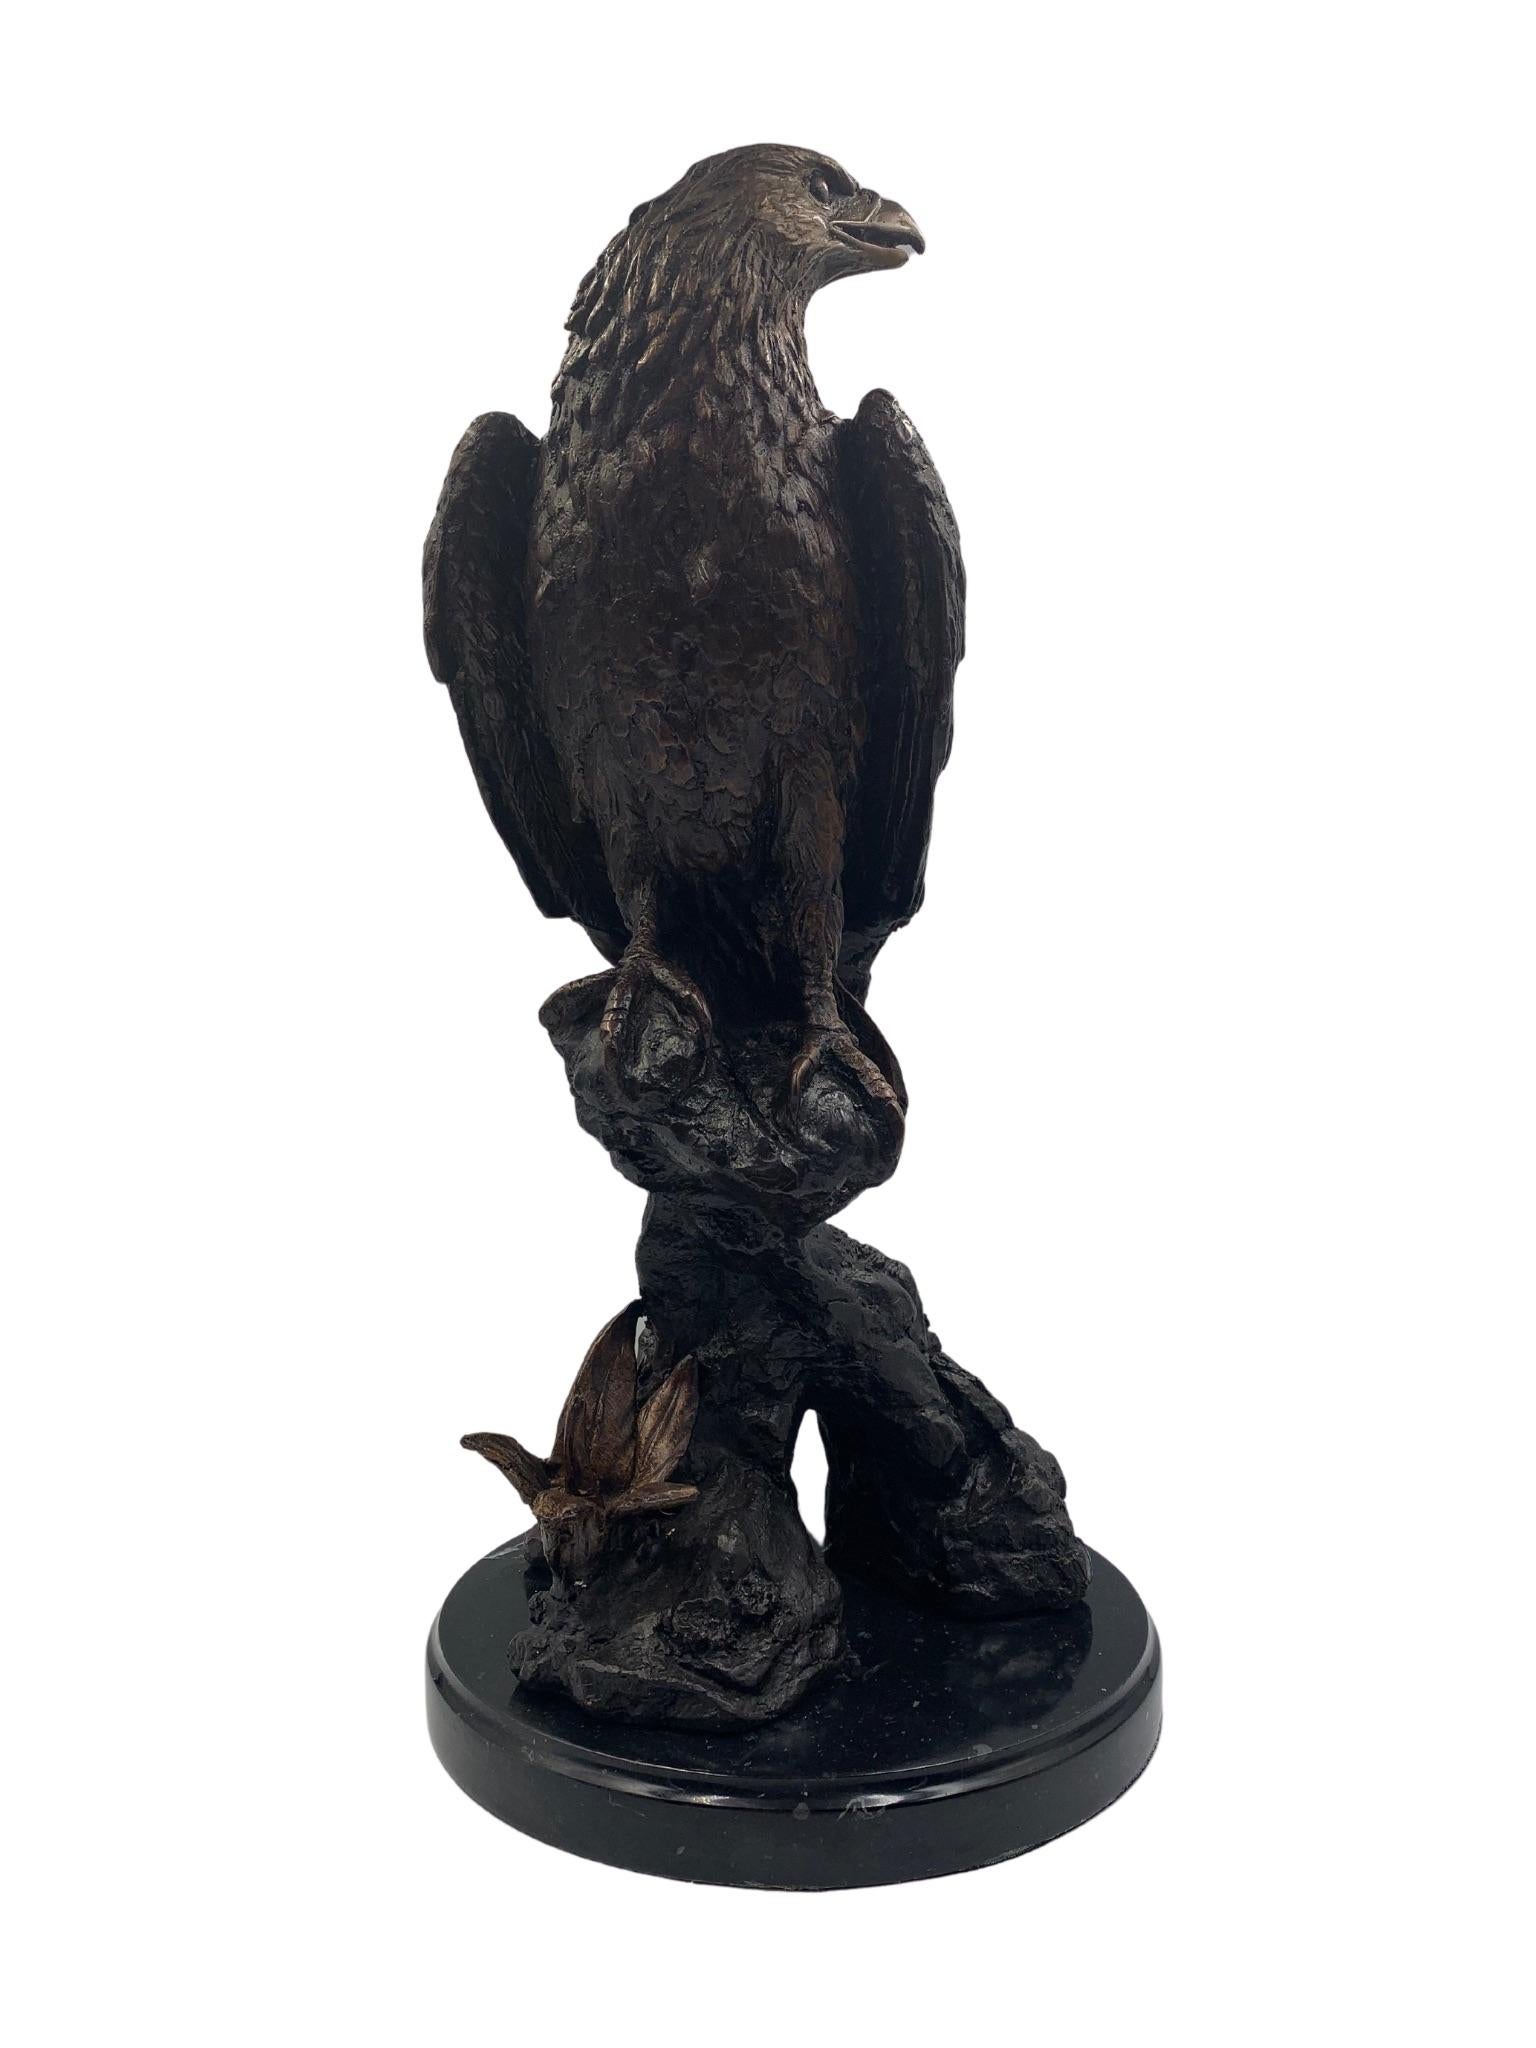 Il s'agit d'une sculpture en bronze du 20e siècle, d'après Jules Moigniez, représentant un aigle sur un perchoir rocheux. Le digne aigle a les ailes repliées et la tête tournée sur le côté, ce qui témoigne d'un travail artisanal exquis. Des plumes